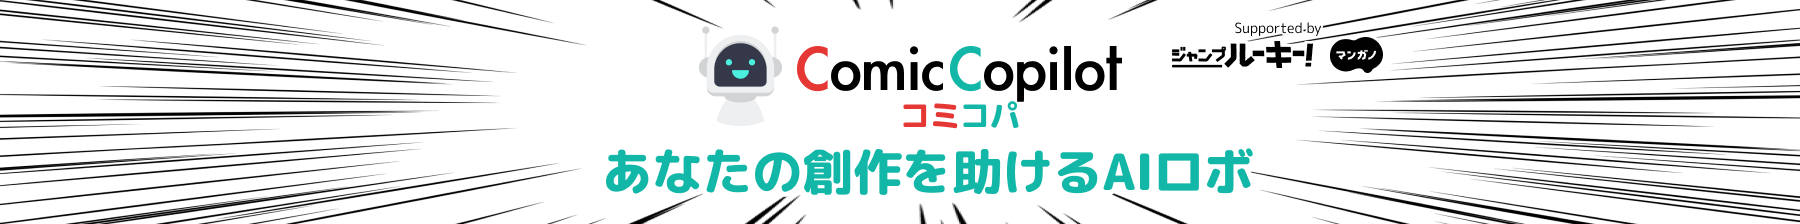 Comic-Copilot コミコパ 漫画制作サポートAI